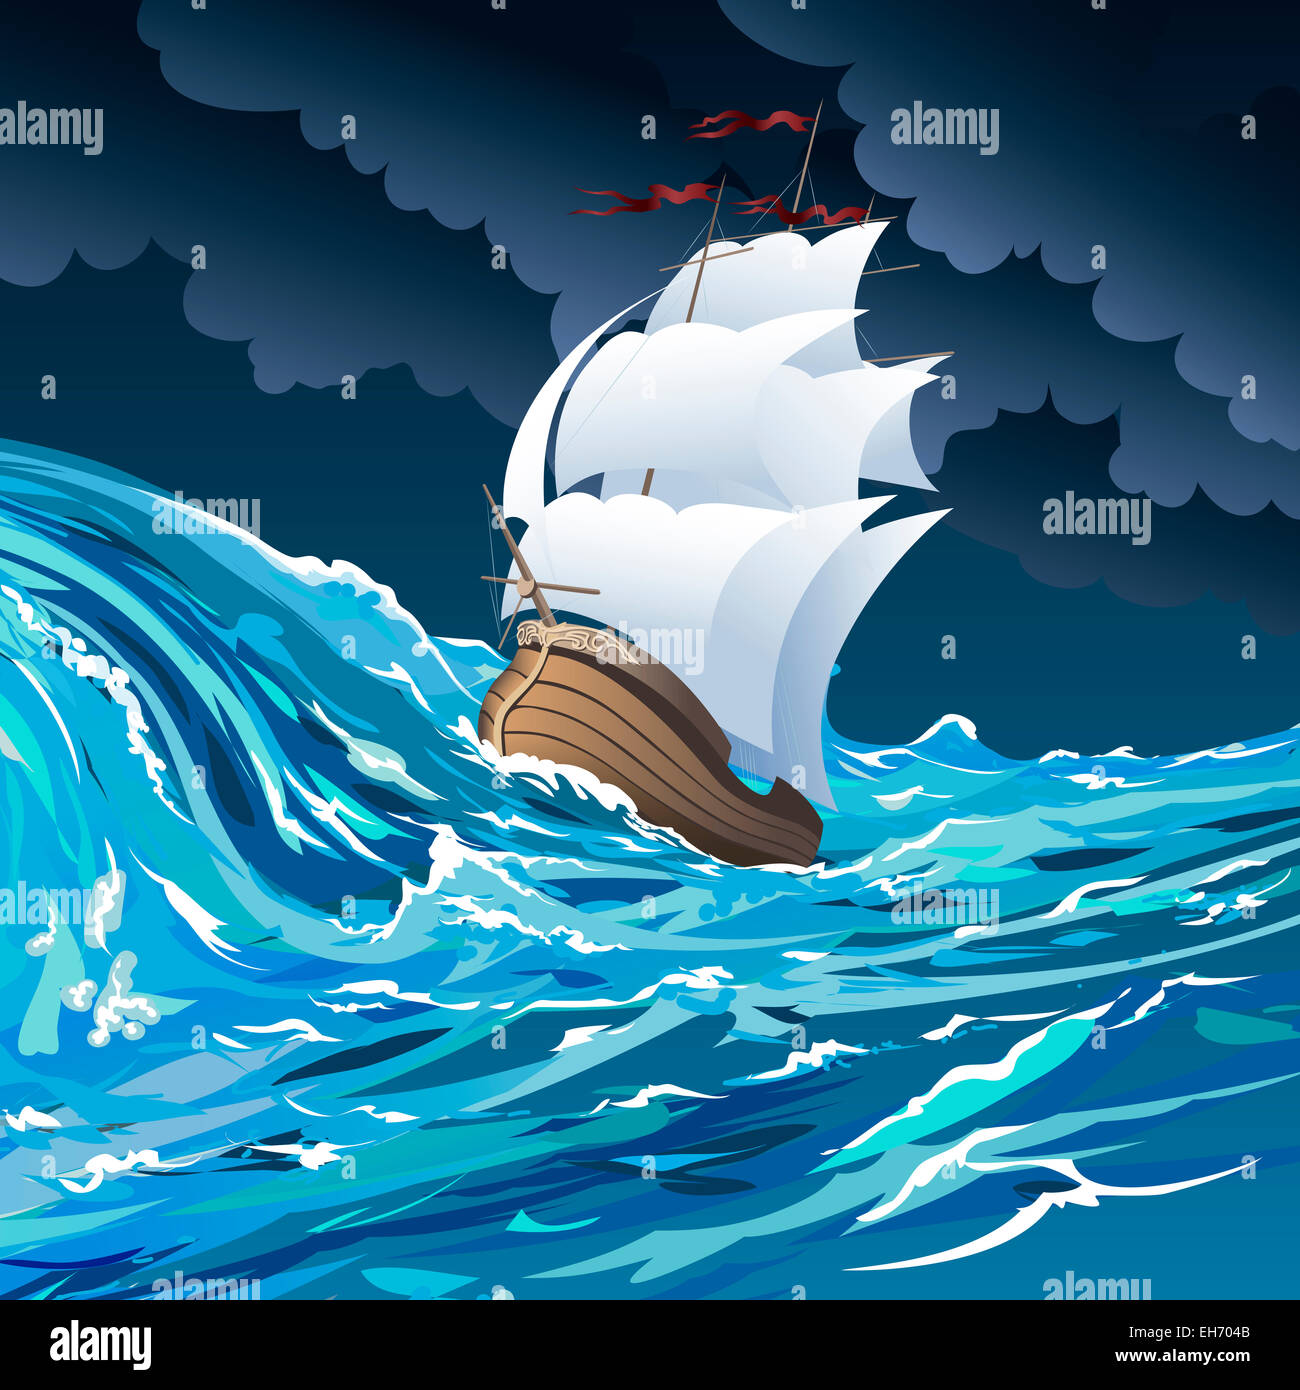 Illustration avec la dérive en voilier dans l'océan houleux contre nuageux ciel nocturne dessiné dans un style cartoon Banque D'Images